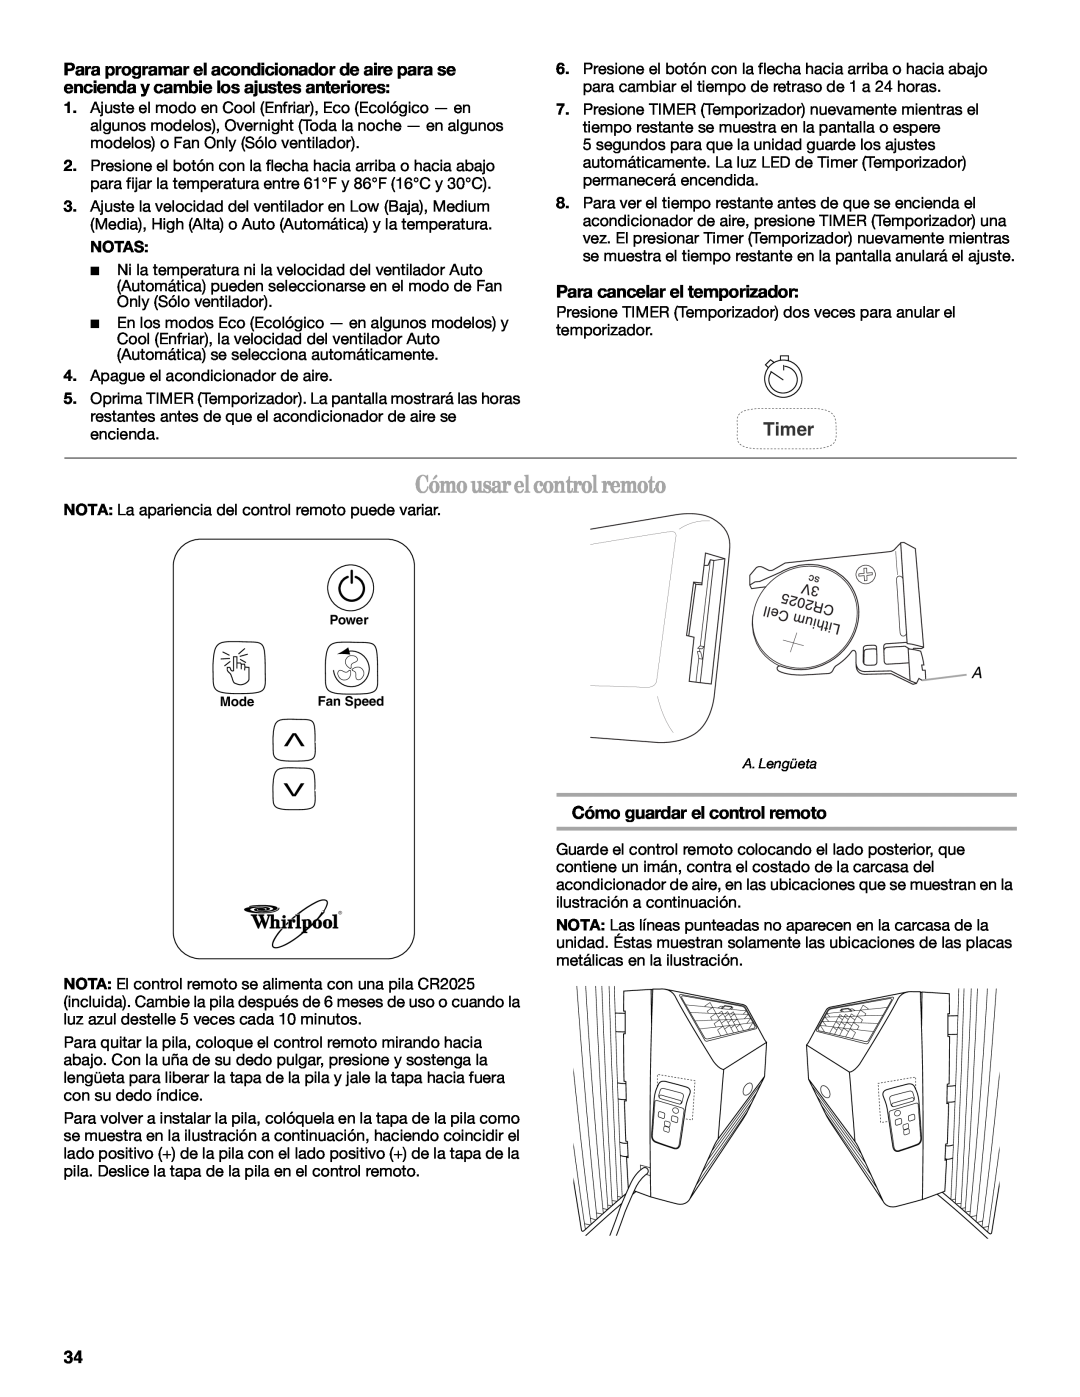 Whirlpool 66161279 manual Cómo usar el control remoto, Para cancelar el temporizador, Cómo guardar el control remoto, Timer 